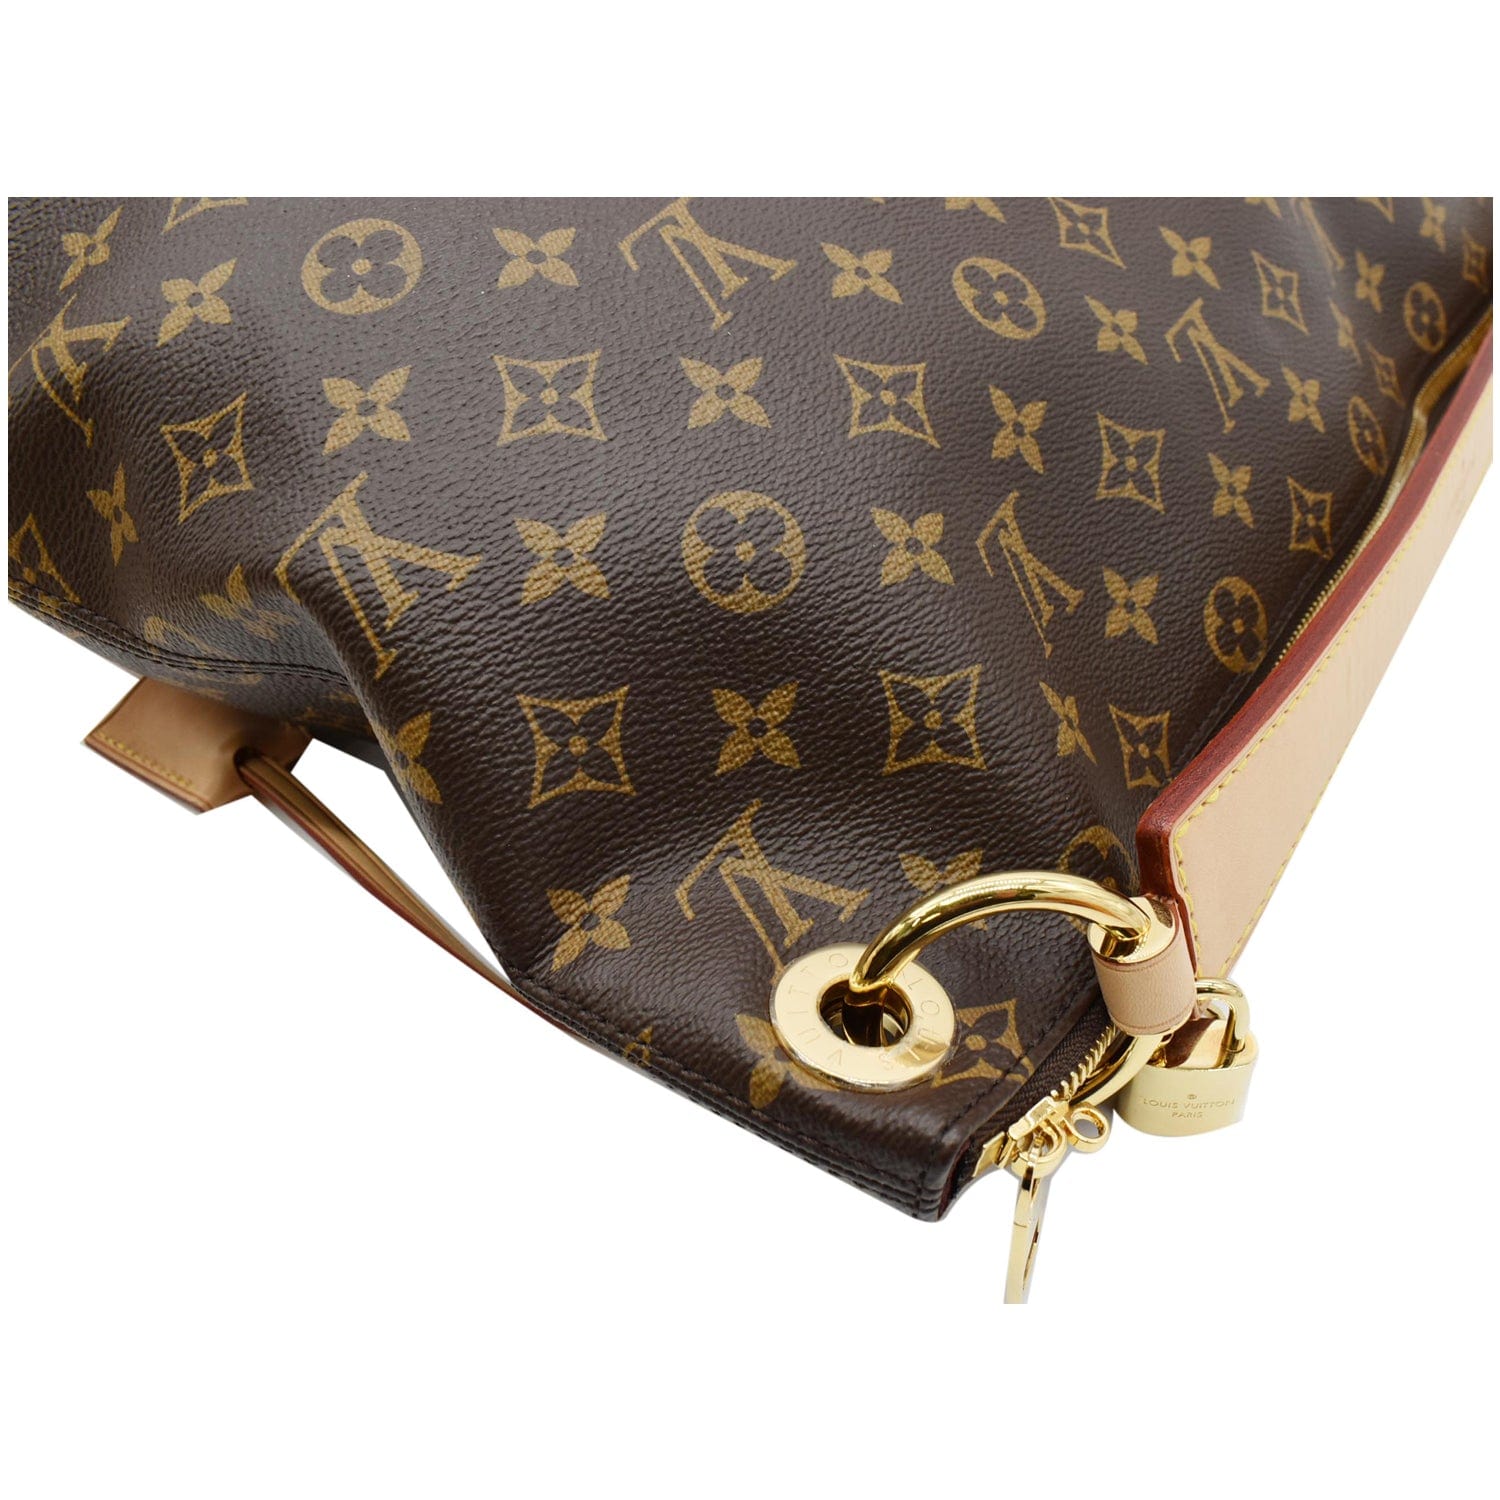 Louis Vuitton Berri MM - Good or Bag